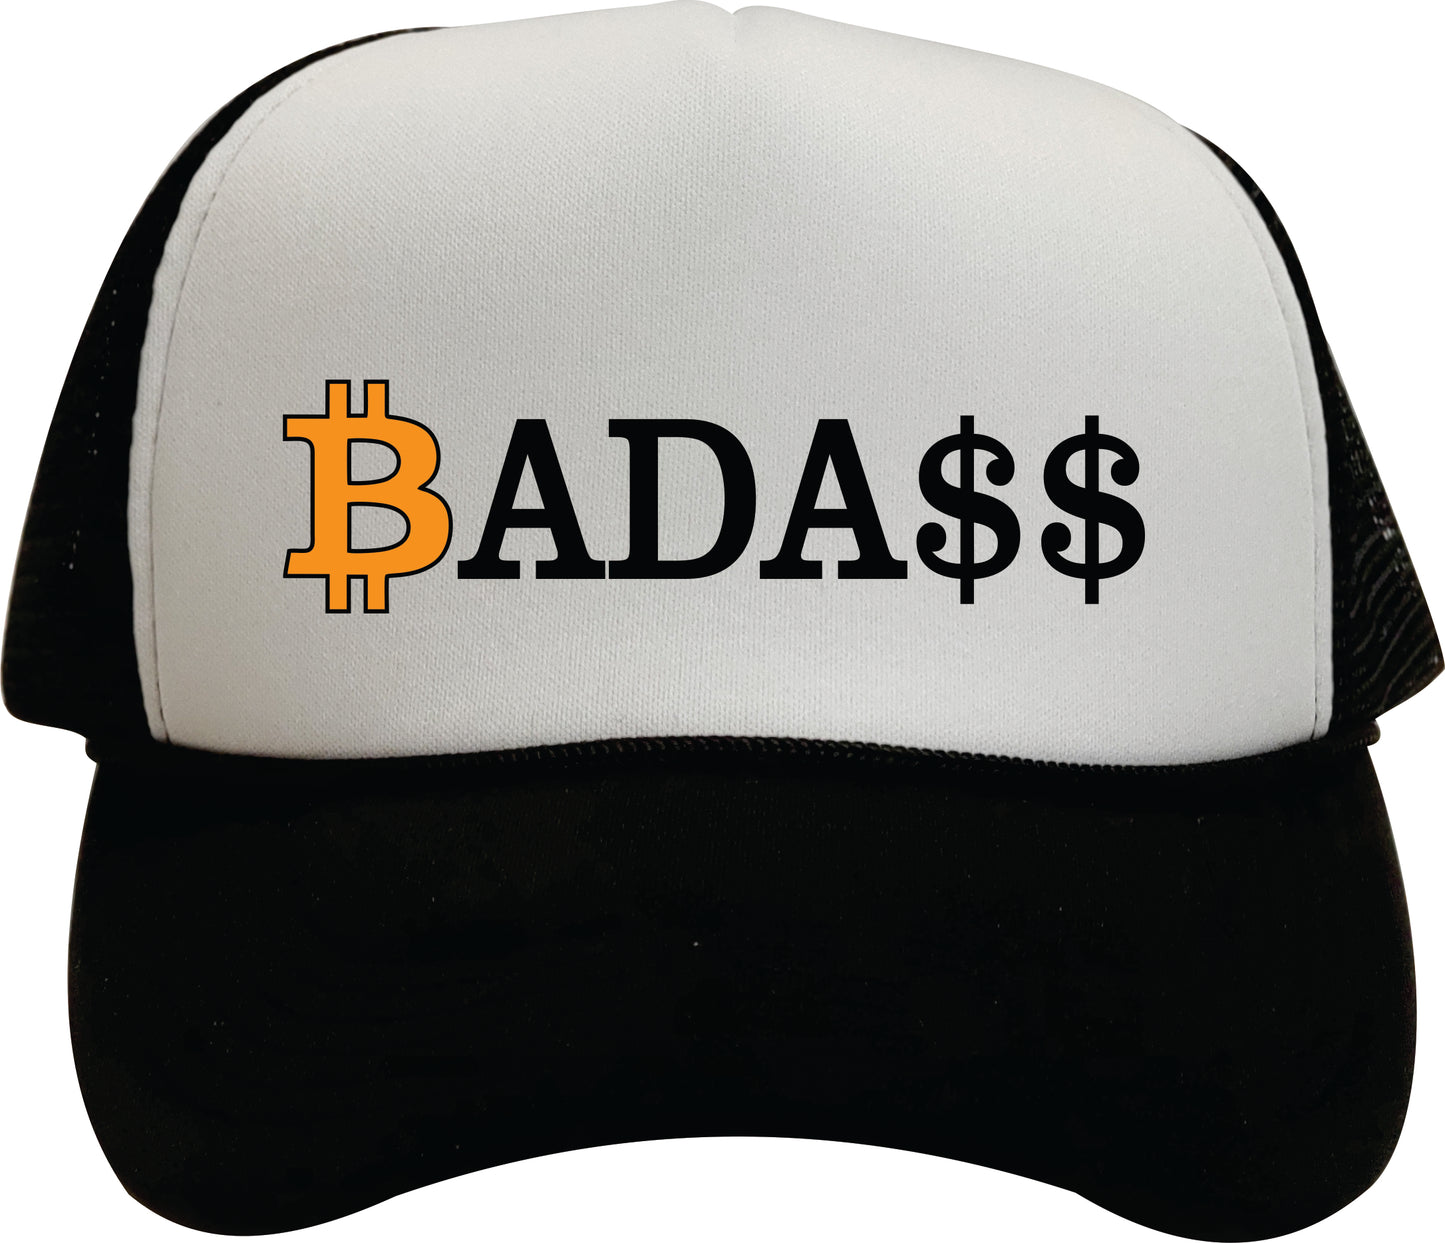 BadAss Trucker Hat